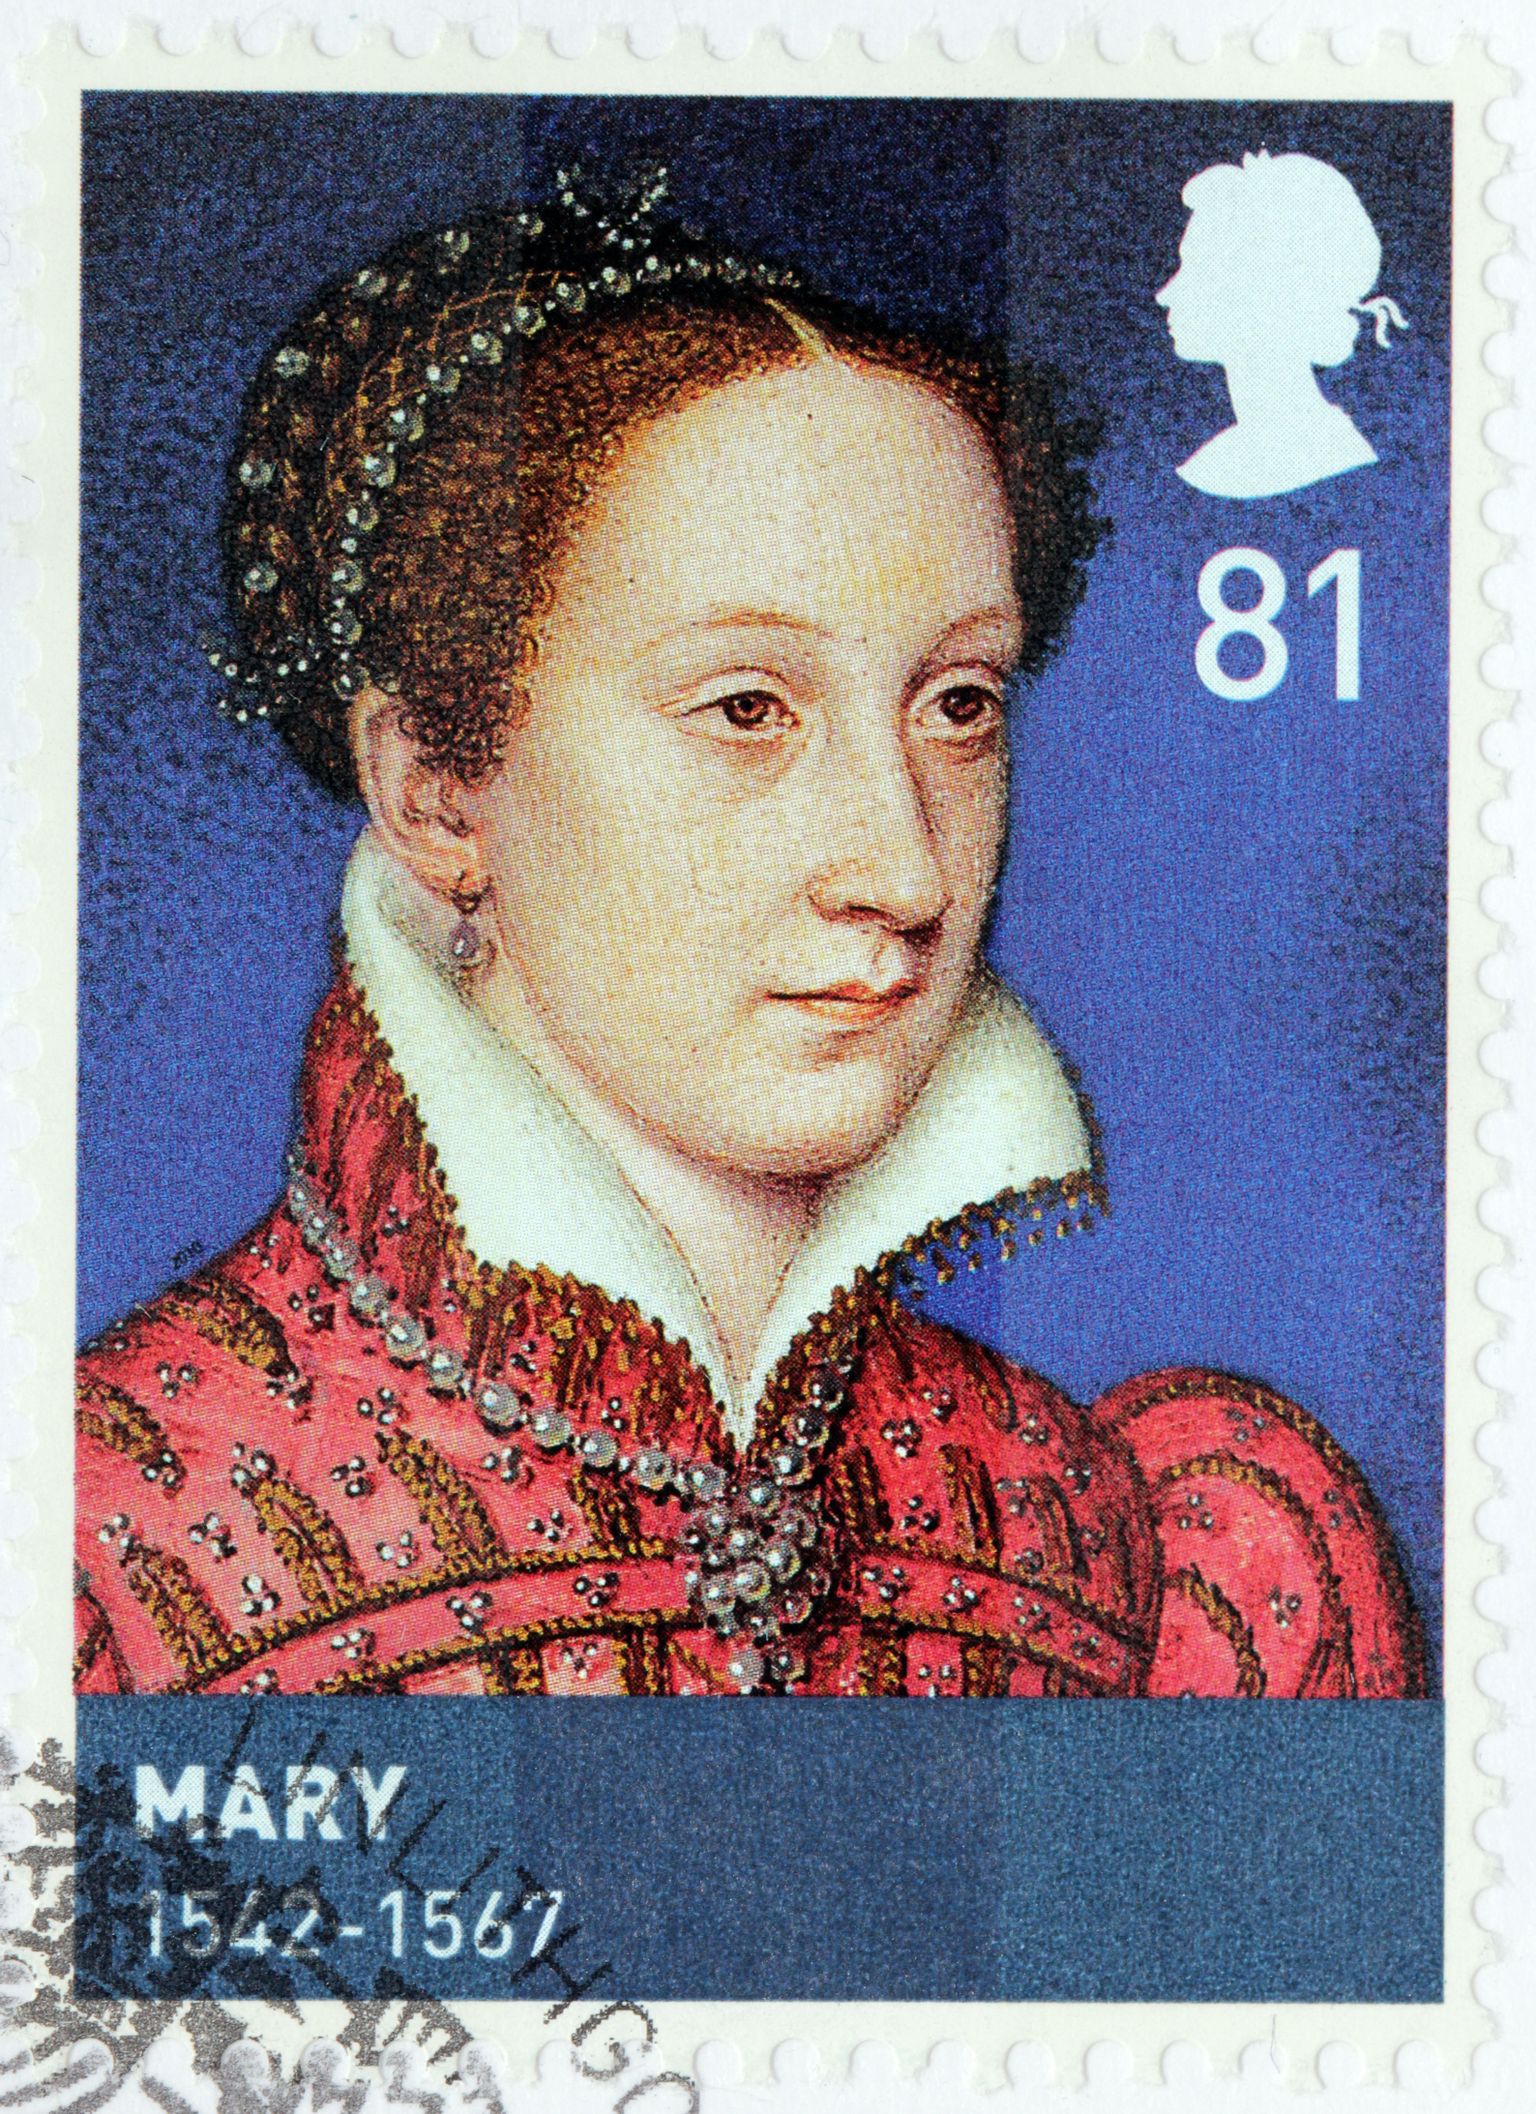 Šoti kuninganna Mary Stuart (1542 - 1587) Suurbritannias välja antud postmargil